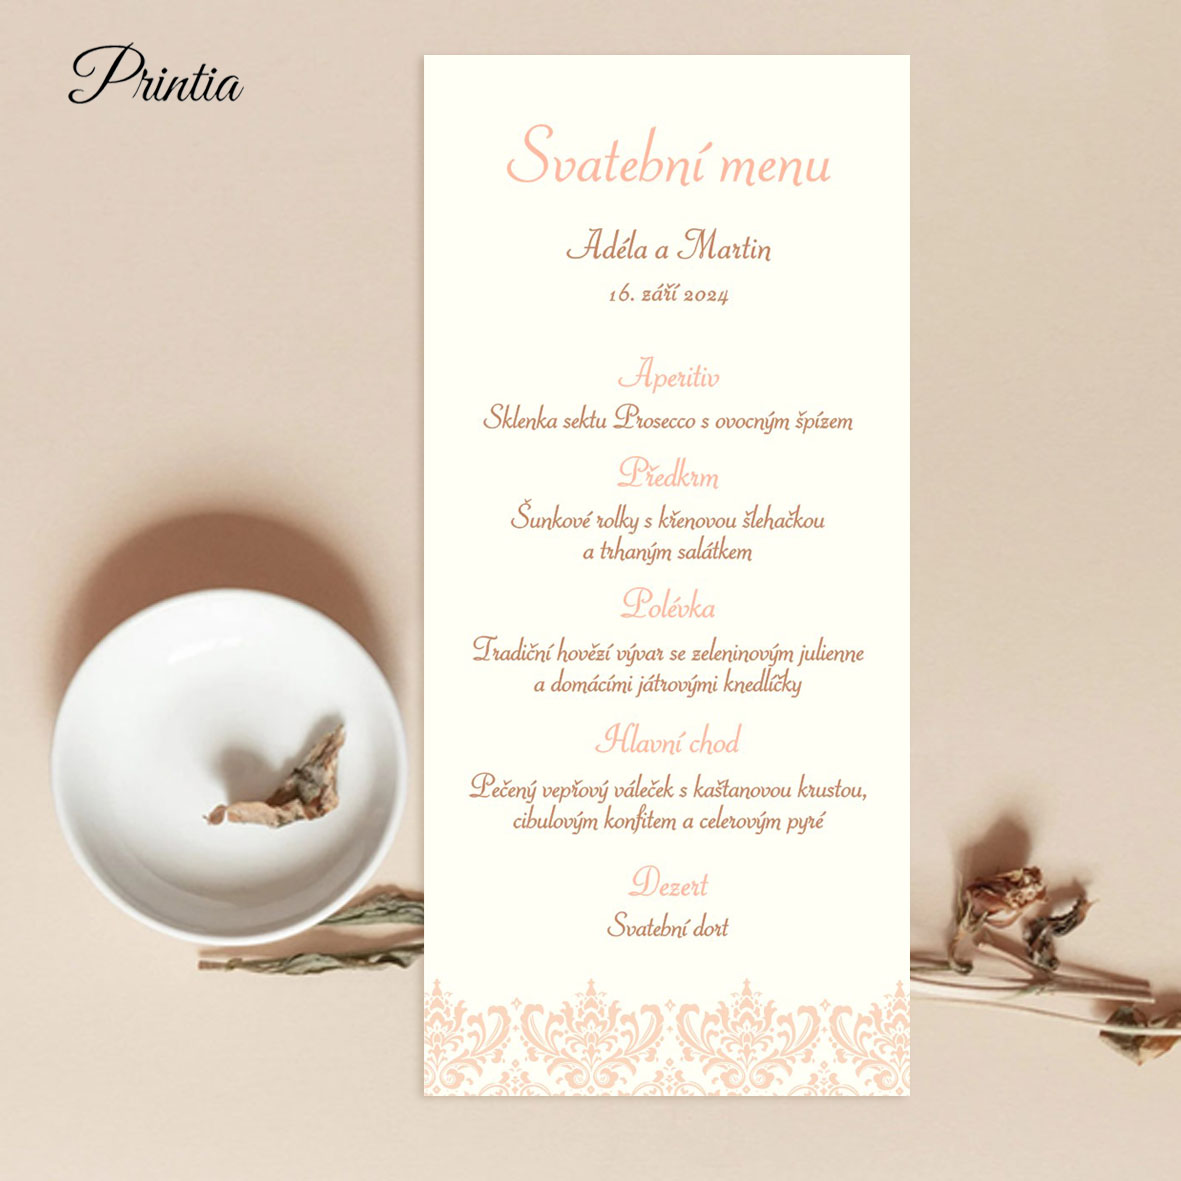 Meruňkové svatební menu